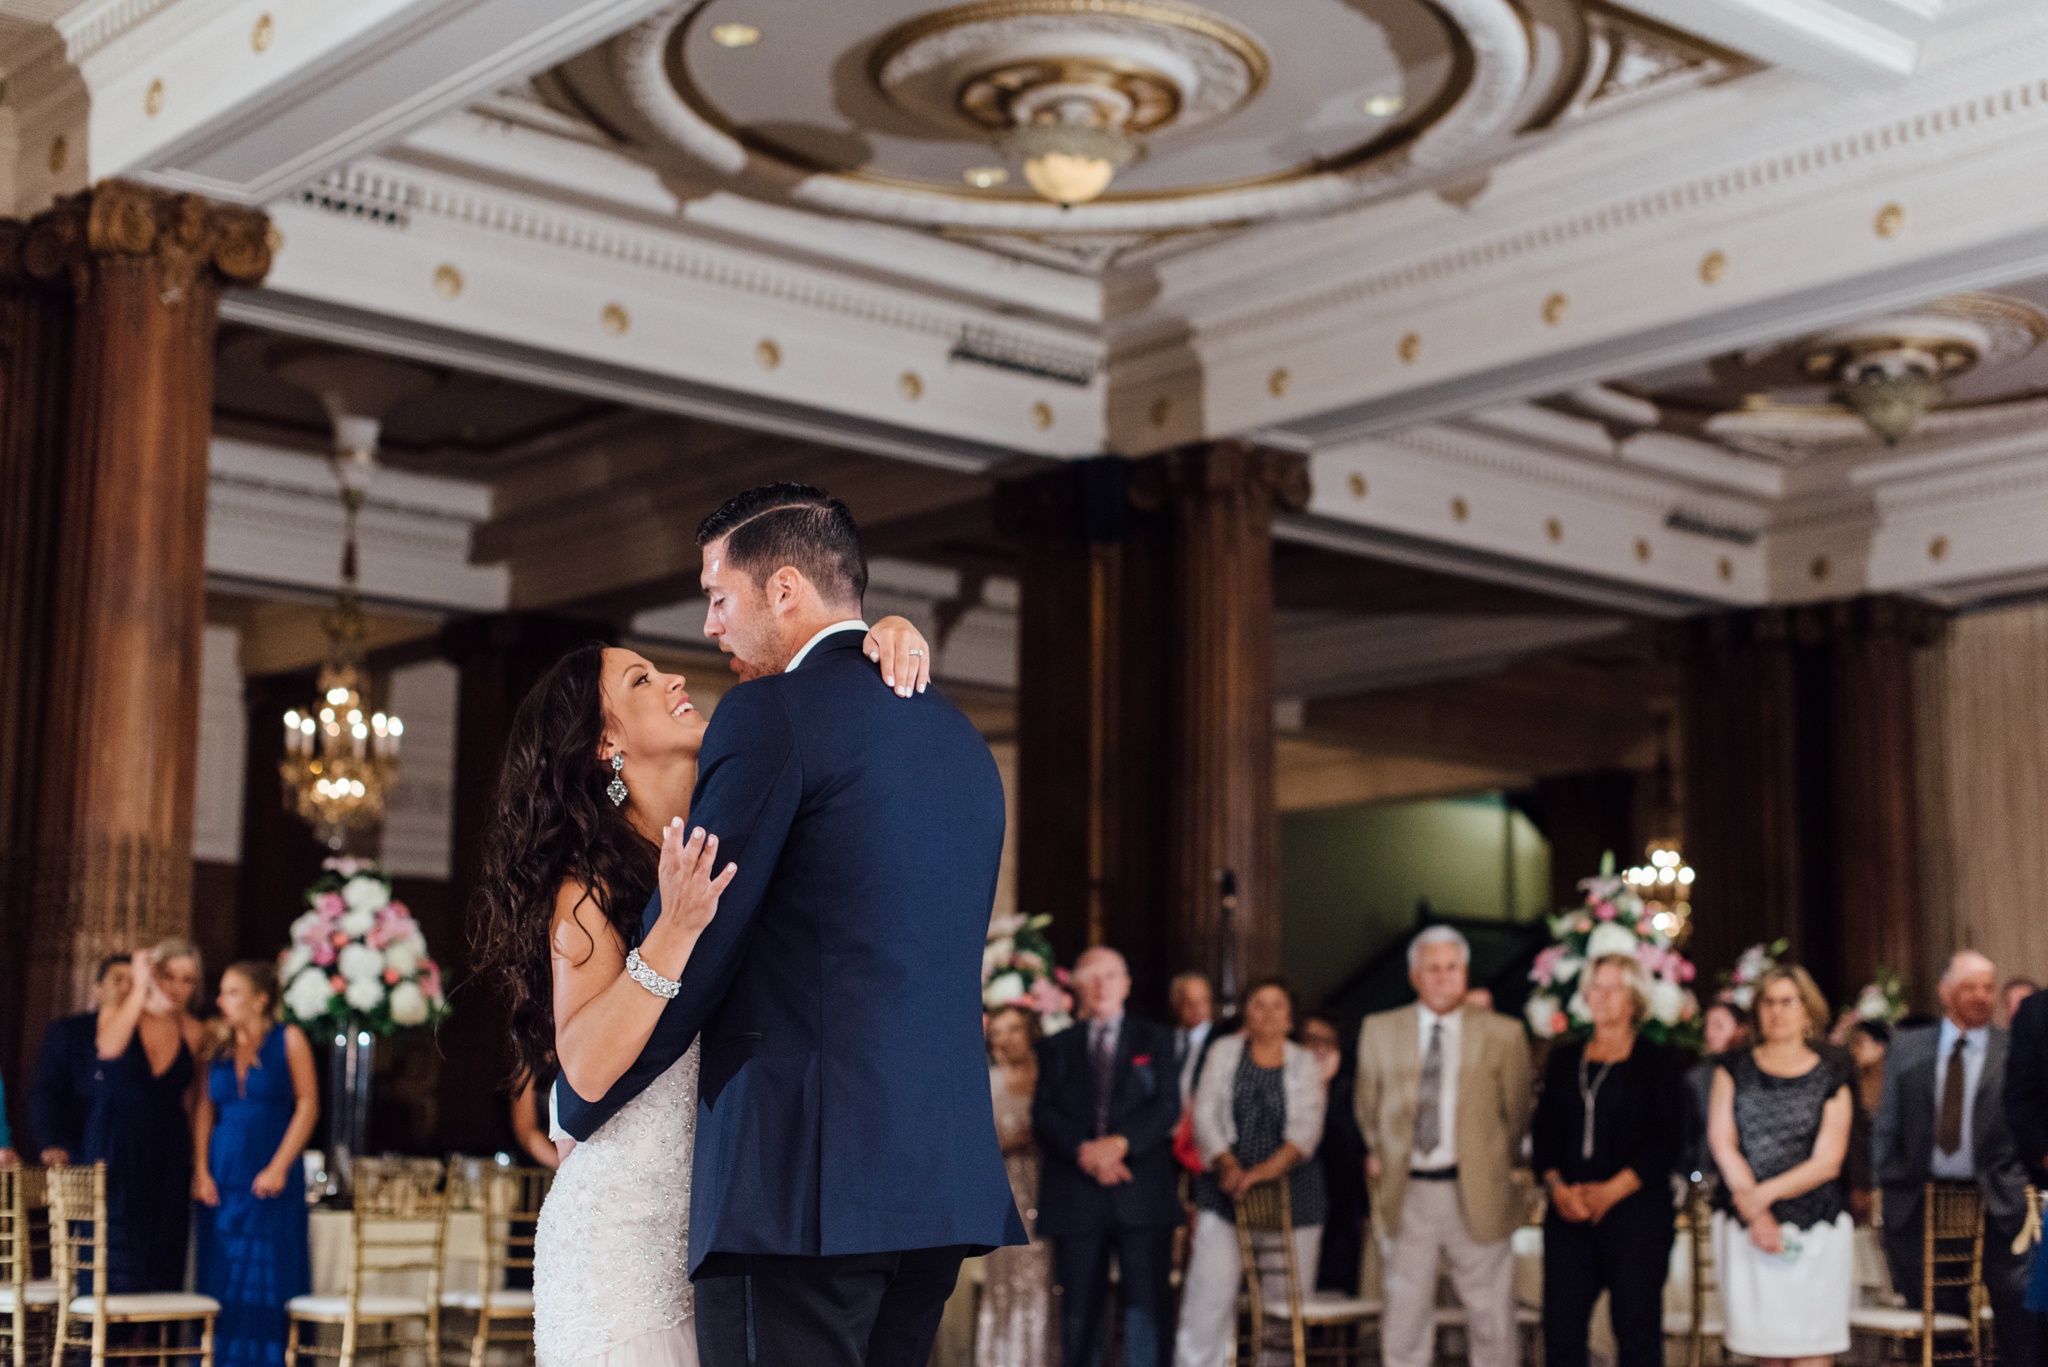 Stephanie + Justin - Crystal Tea Room - Philadelphia Wedding Photographer - Alison Dunn Photography photo